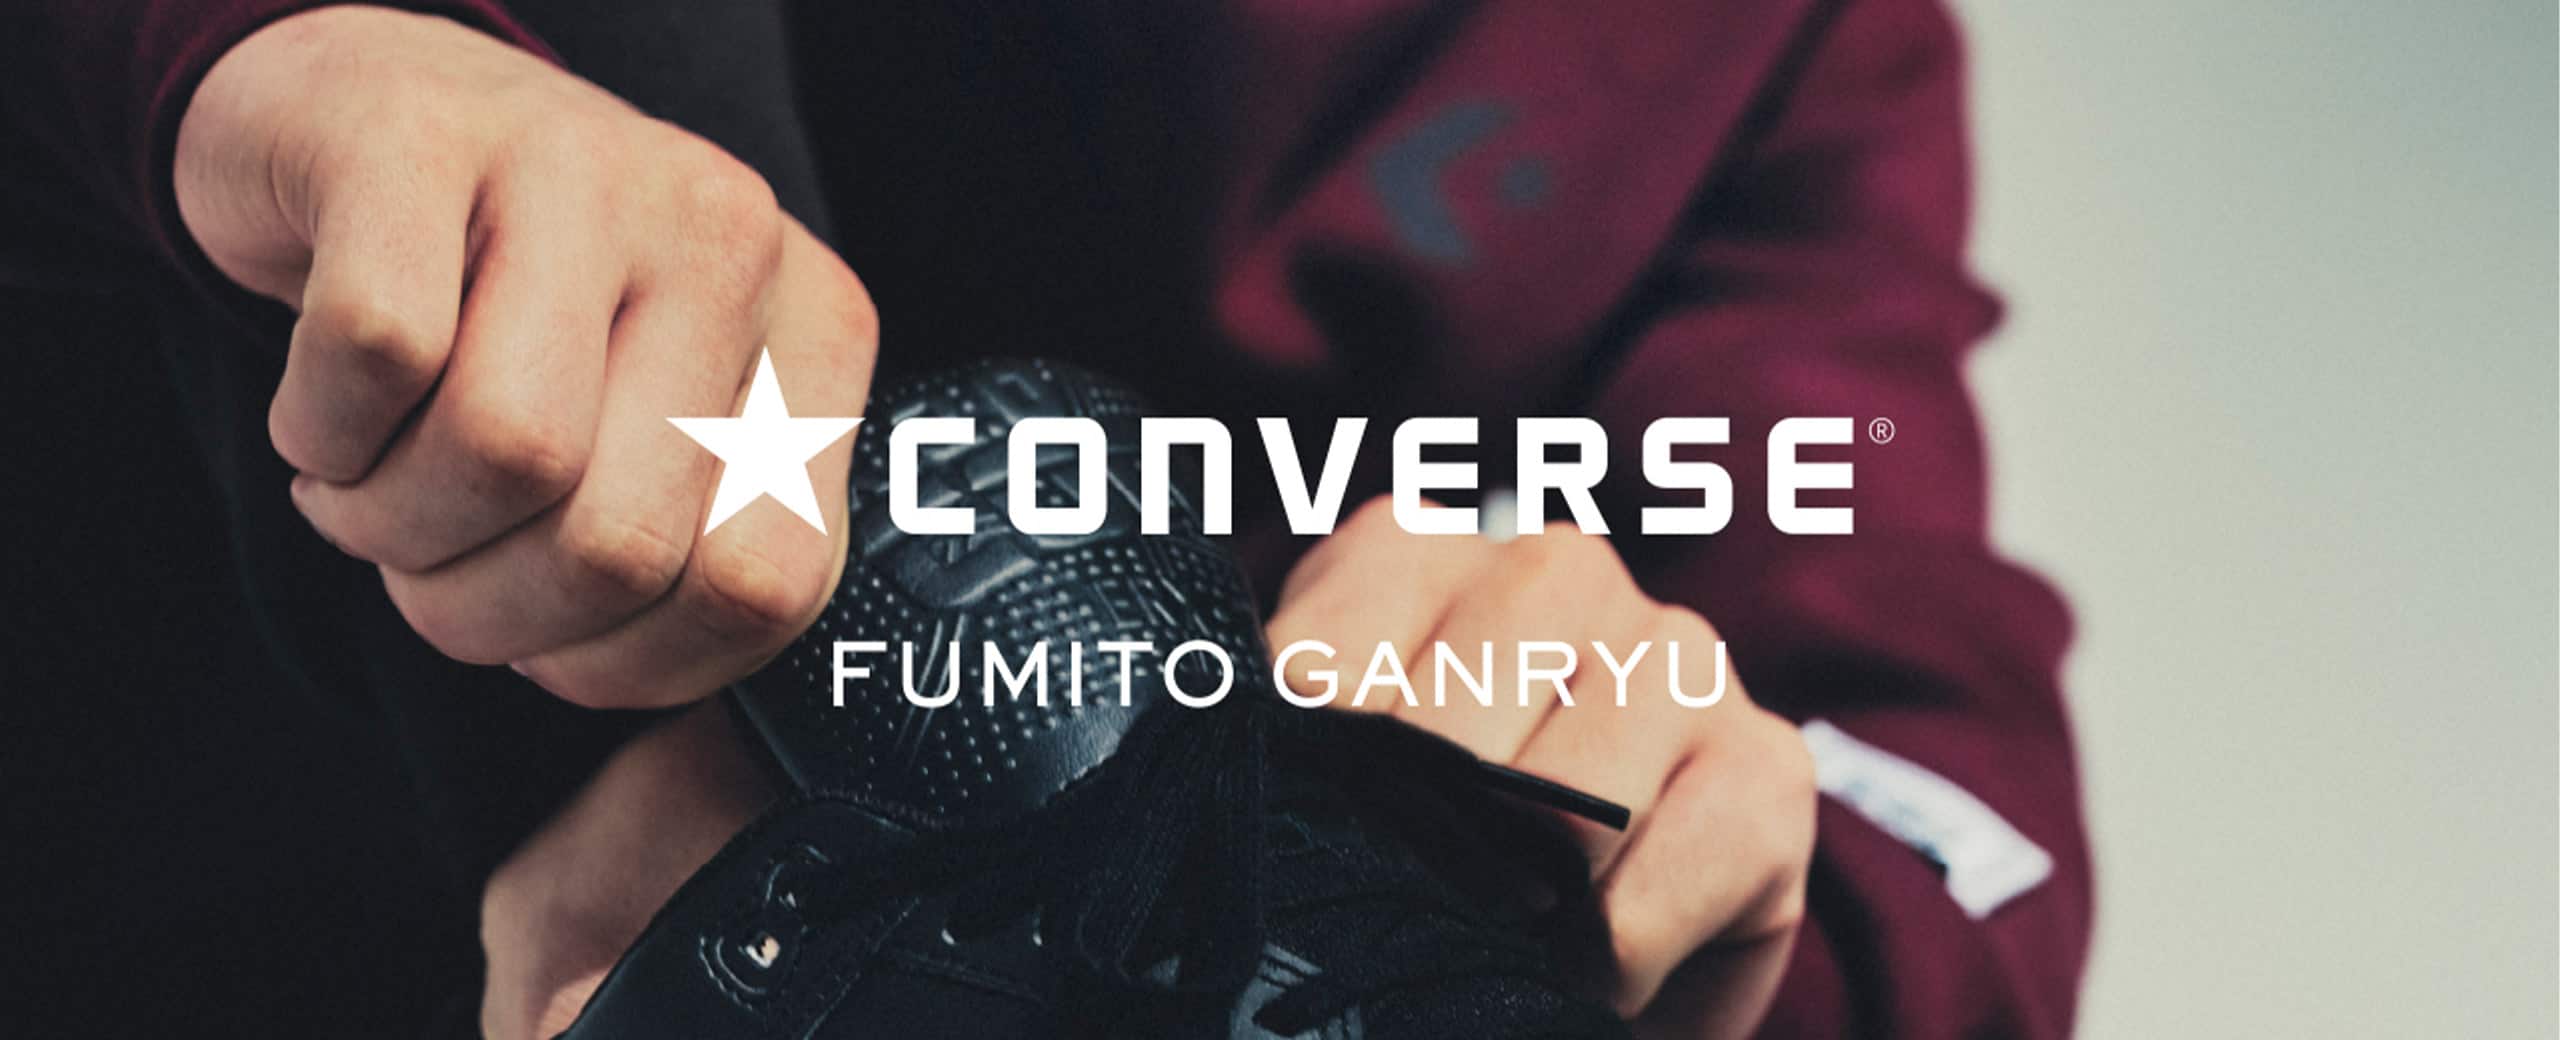 "FUMITO GANRYU × CONVERSE Baskate shoes"